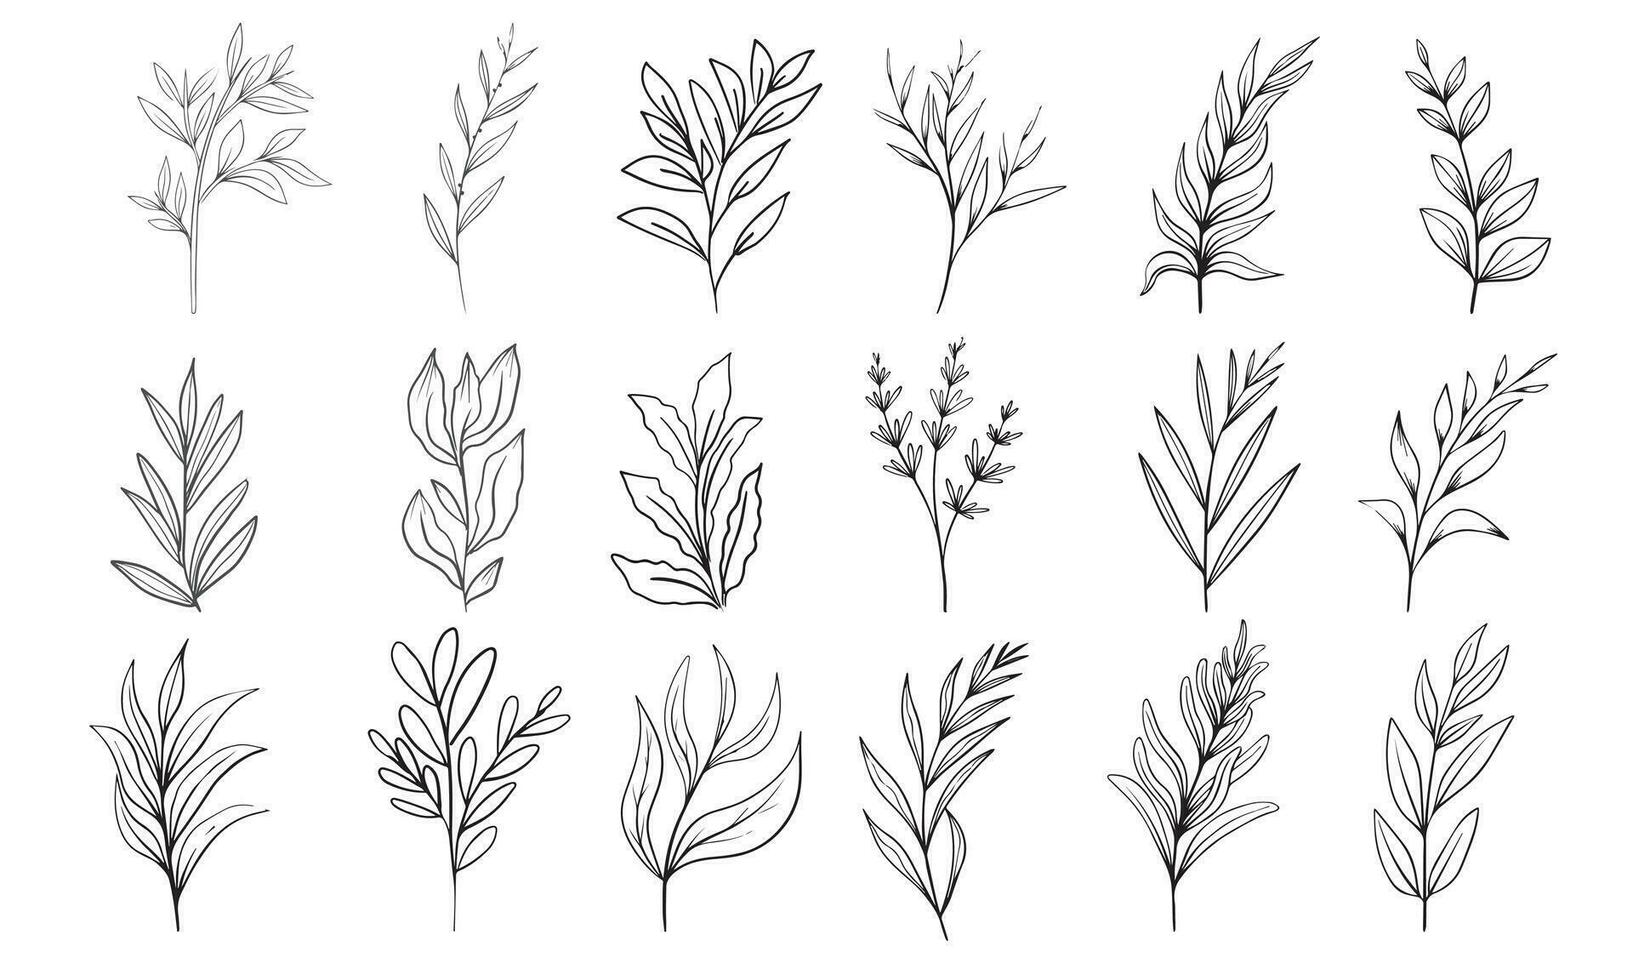 mano dibujado floral hierbas conjunto elementos vector